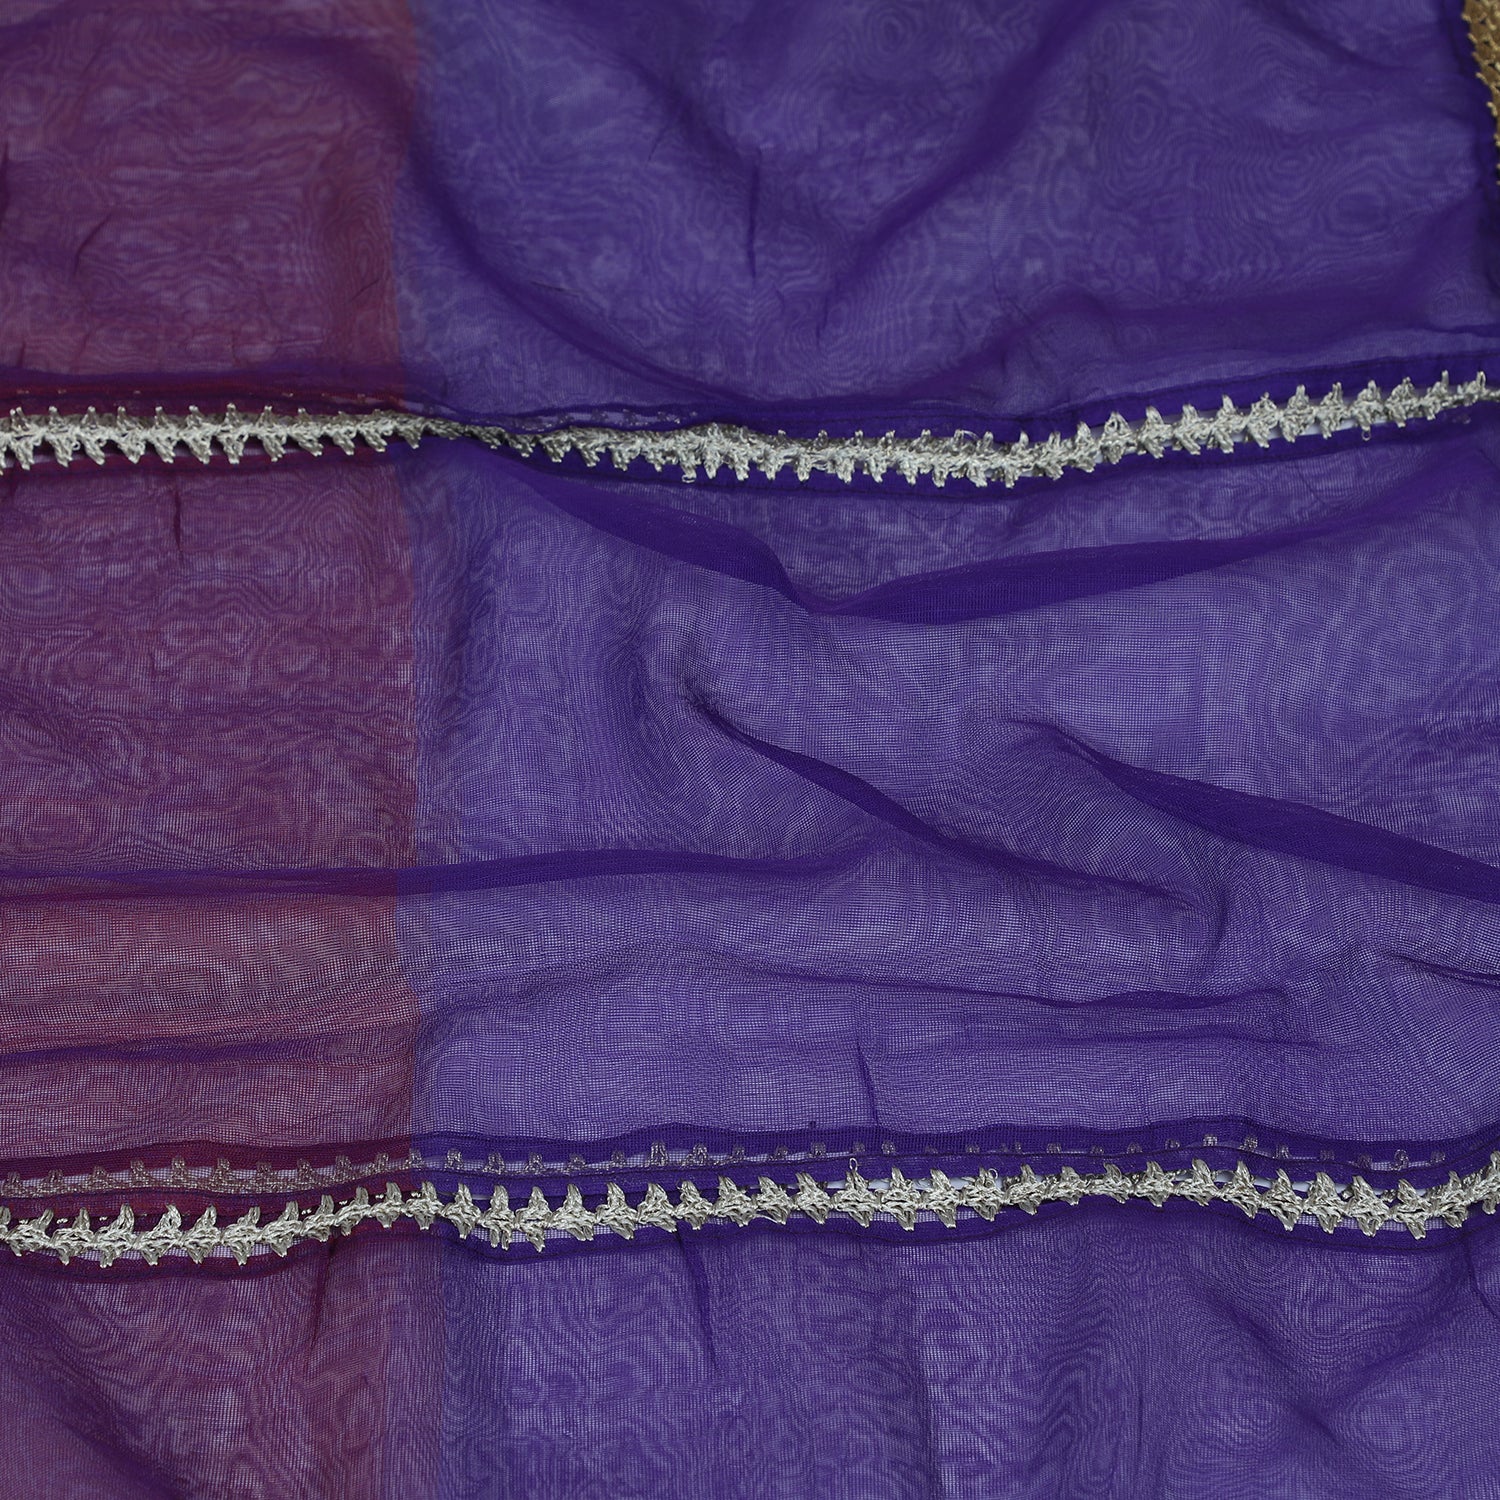 Purple-Mauve Color Nylon Net Stole with Crochet Border